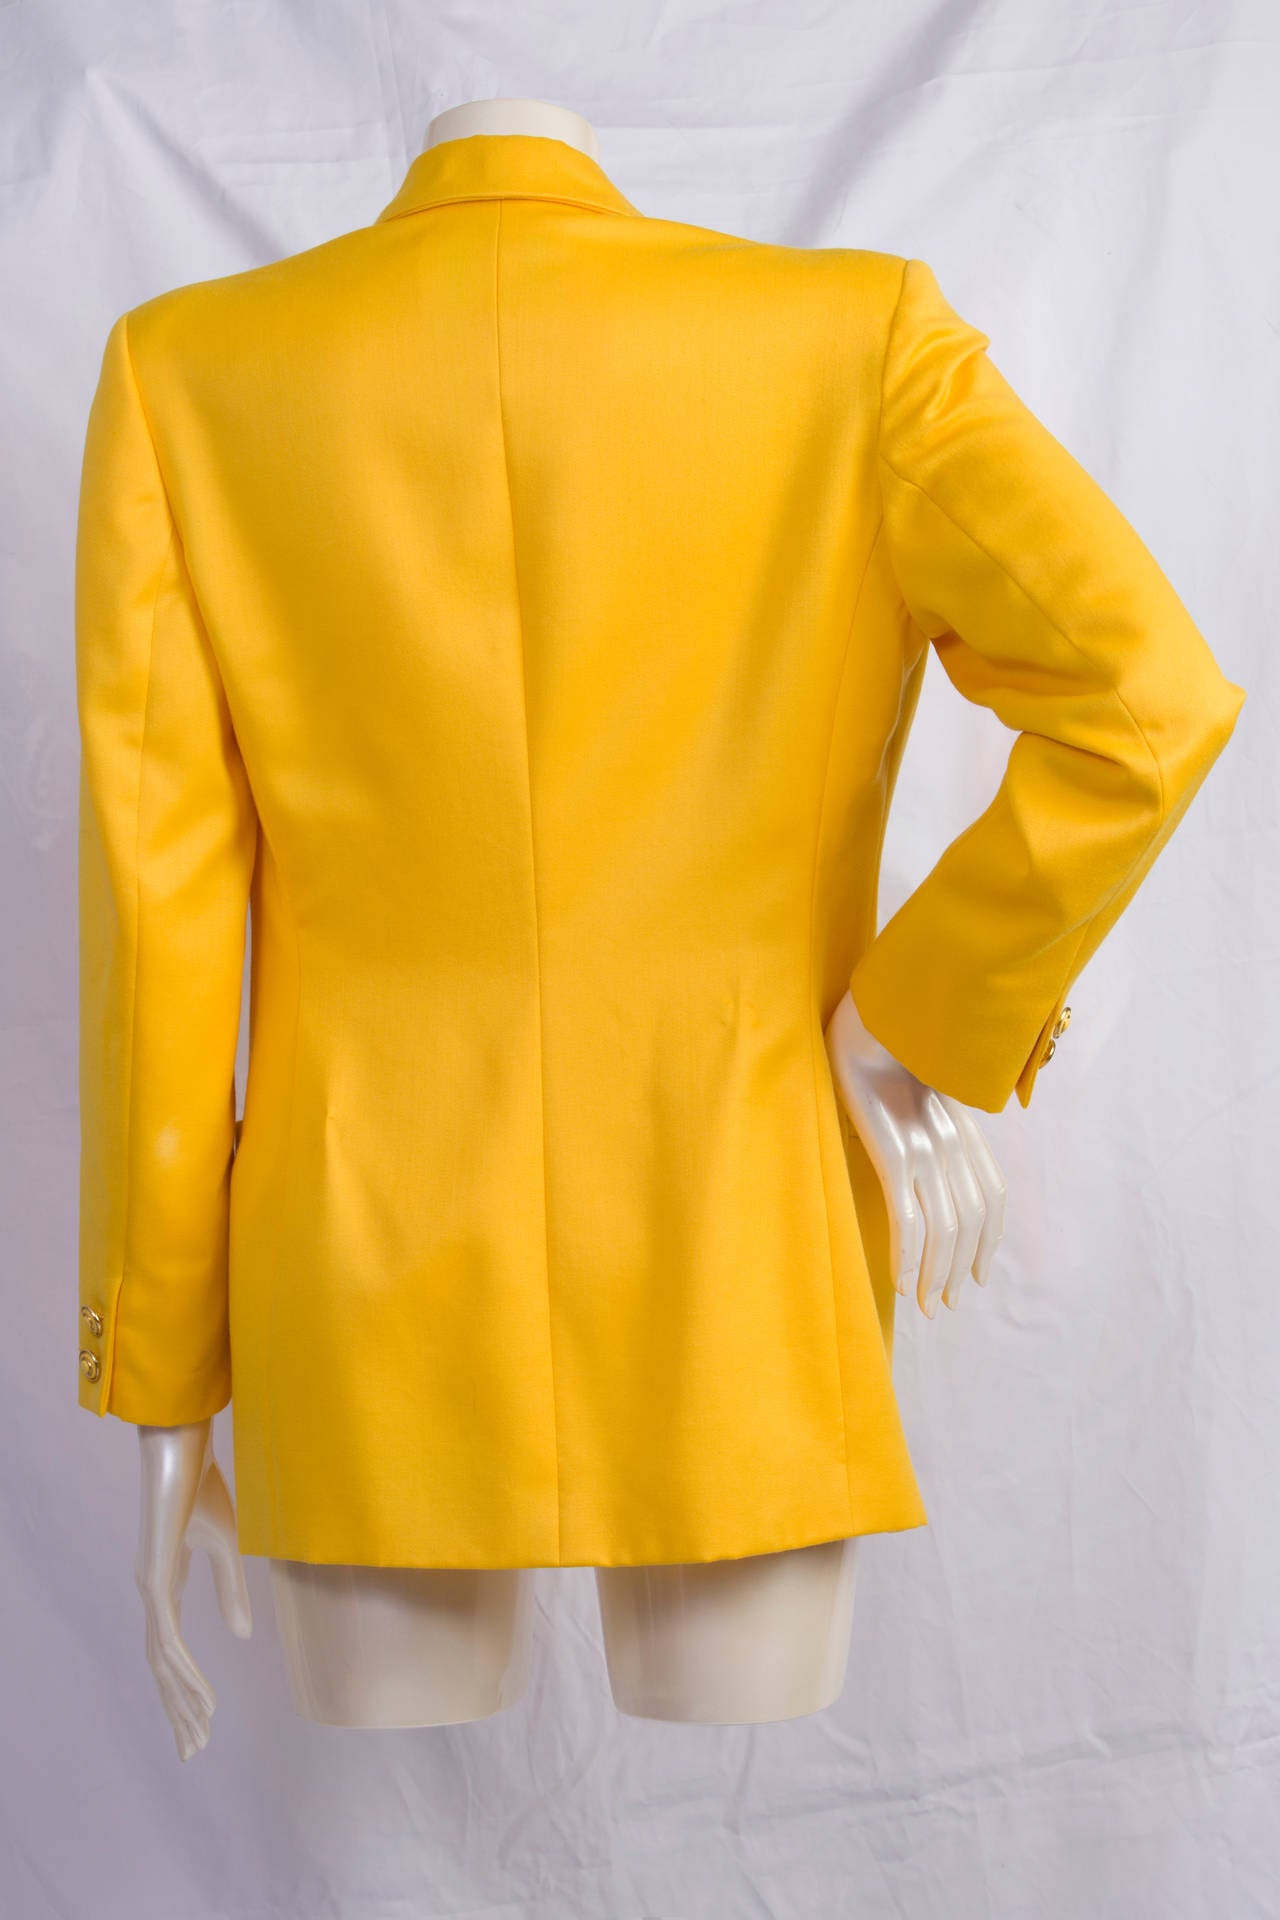 versace yellow coat